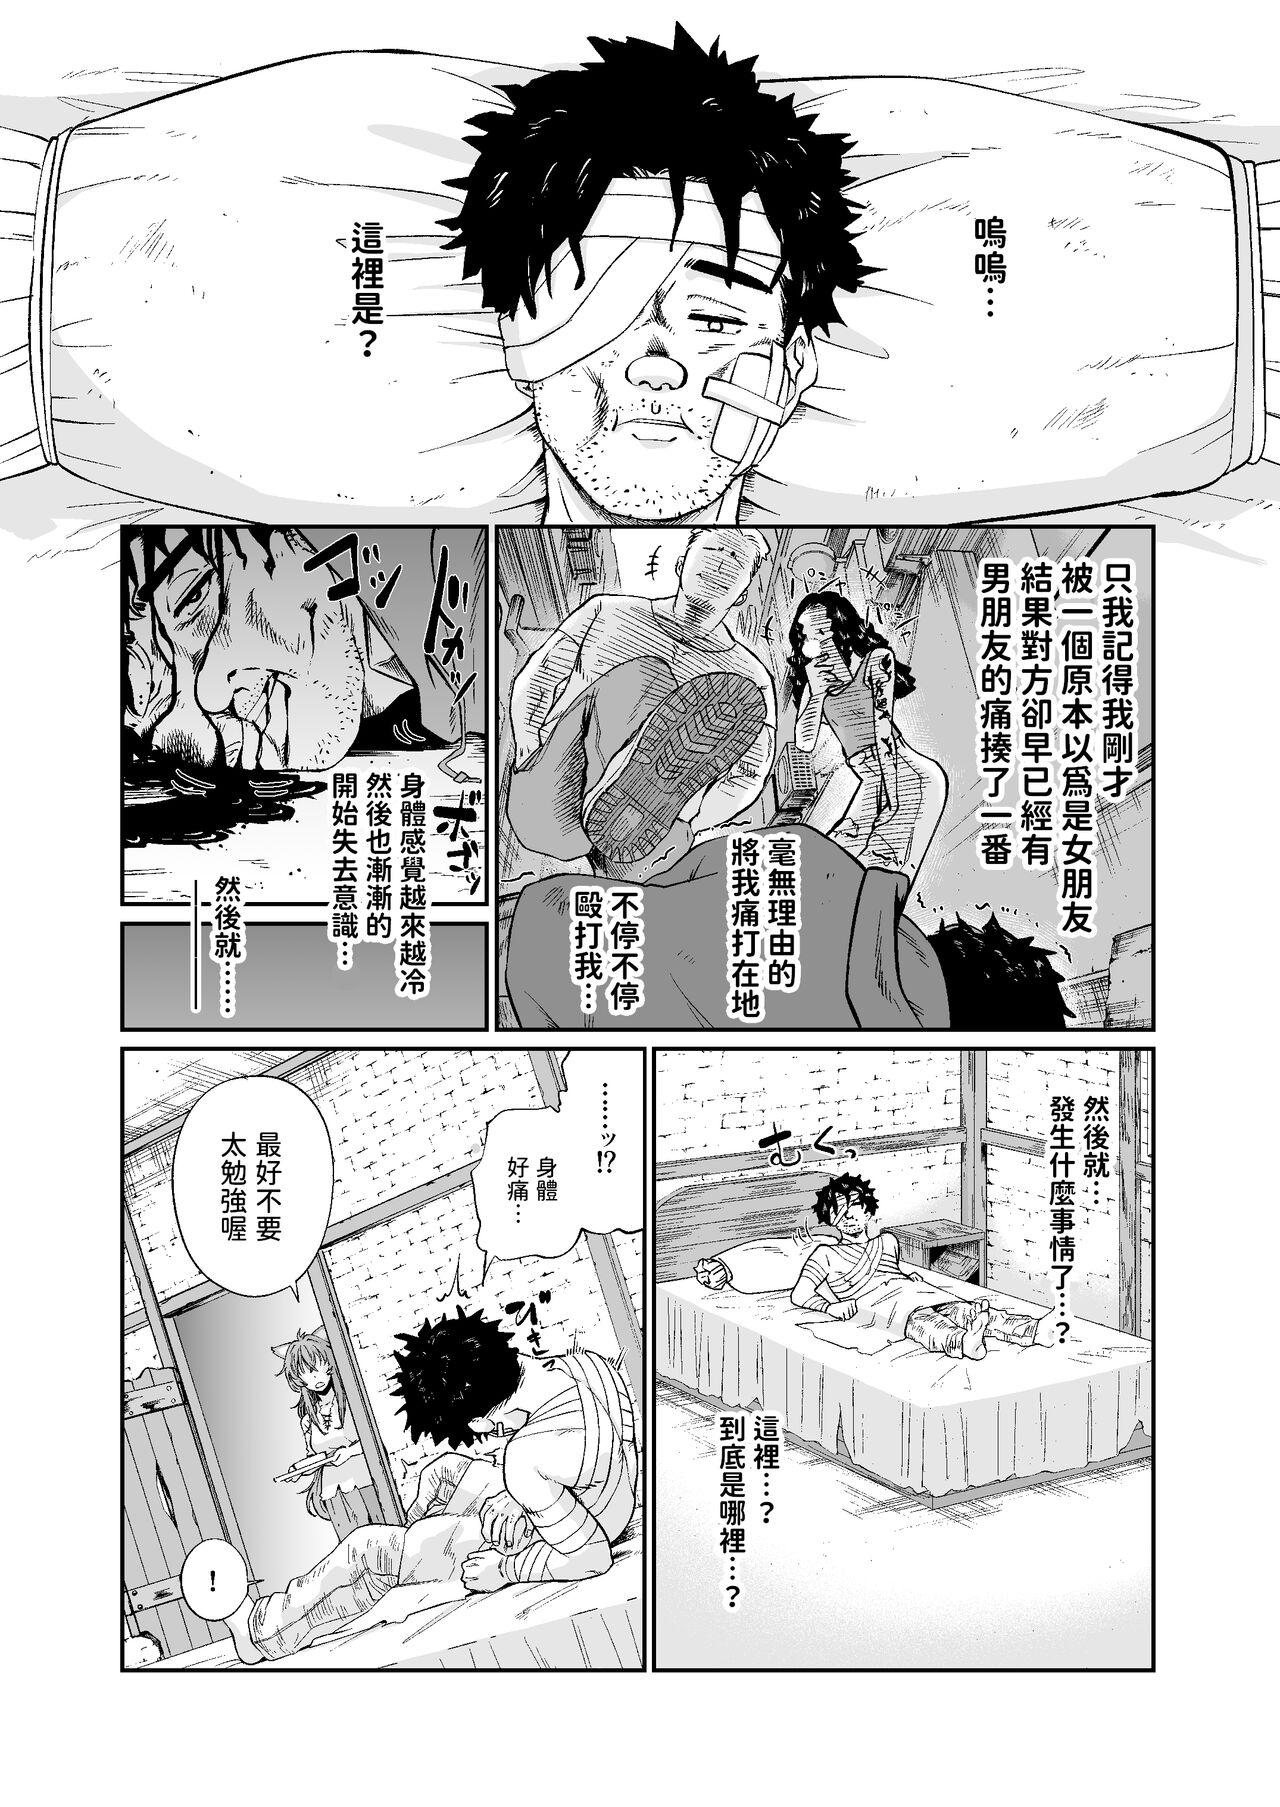 Chaturbate Kemomimi Musume to Zero kara Seikatsu - Original Cocksucker - Page 3